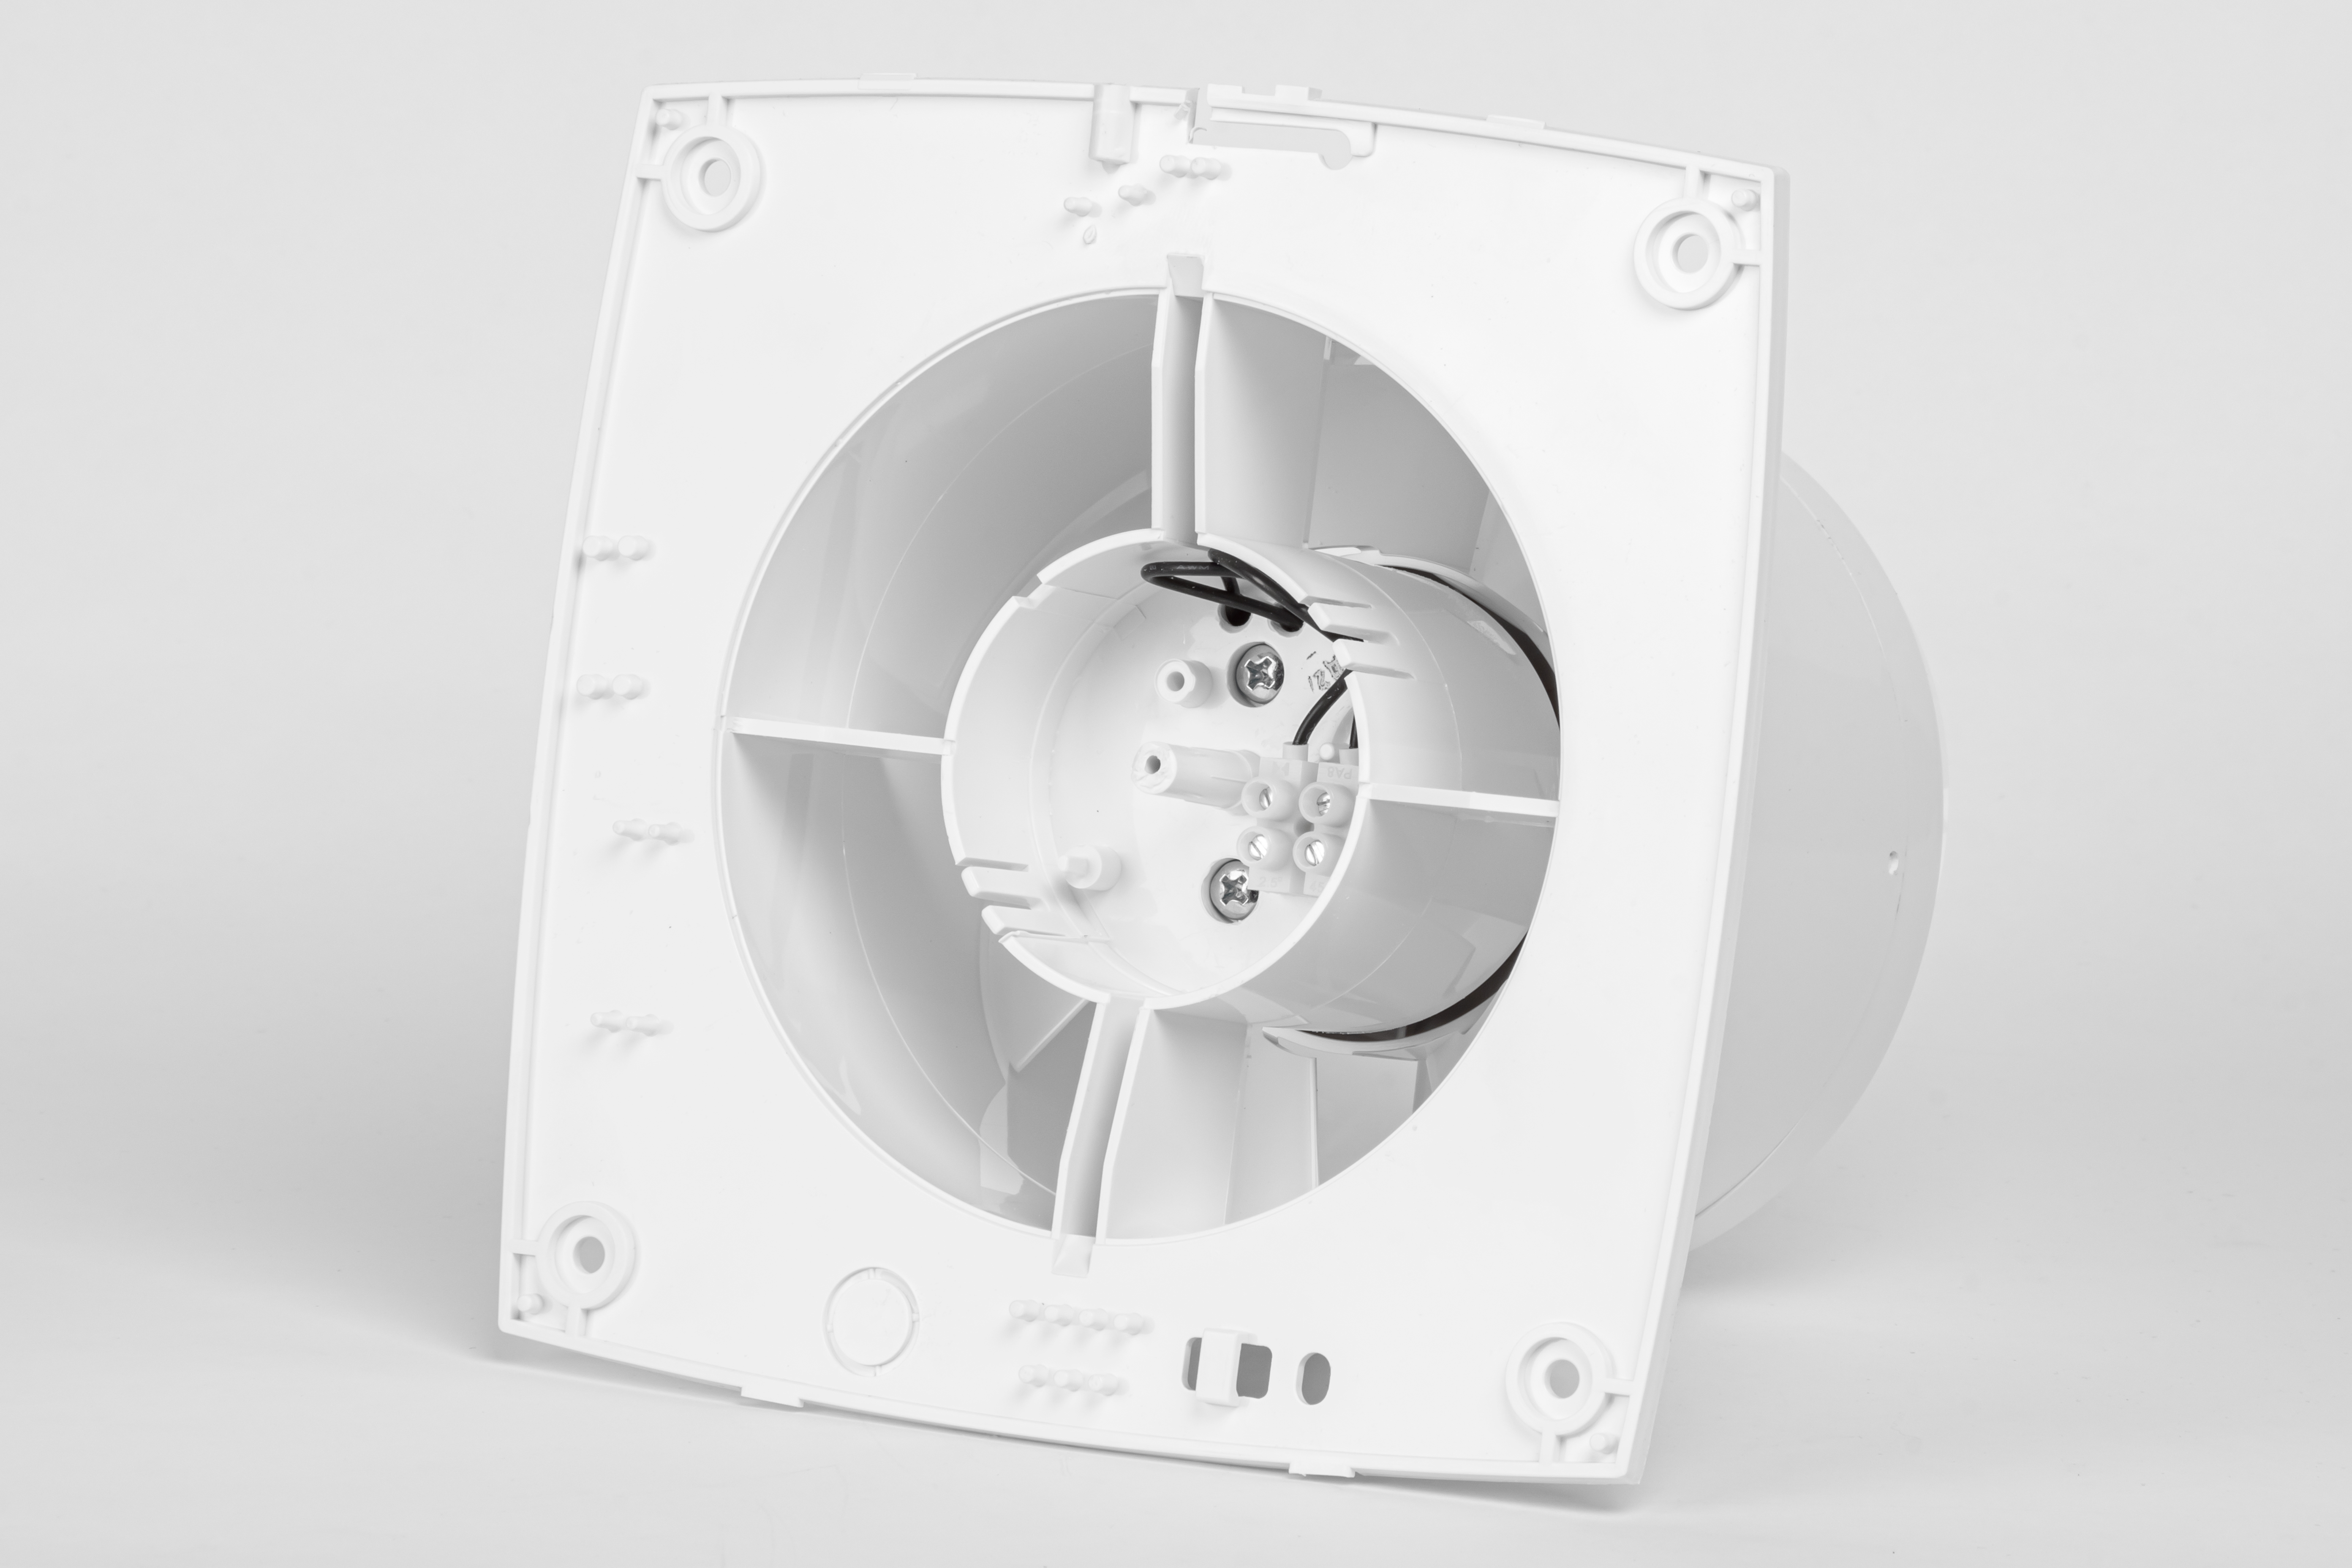 Вытяжной вентилятор Вентс 125 ЛД К отзывы - изображения 5